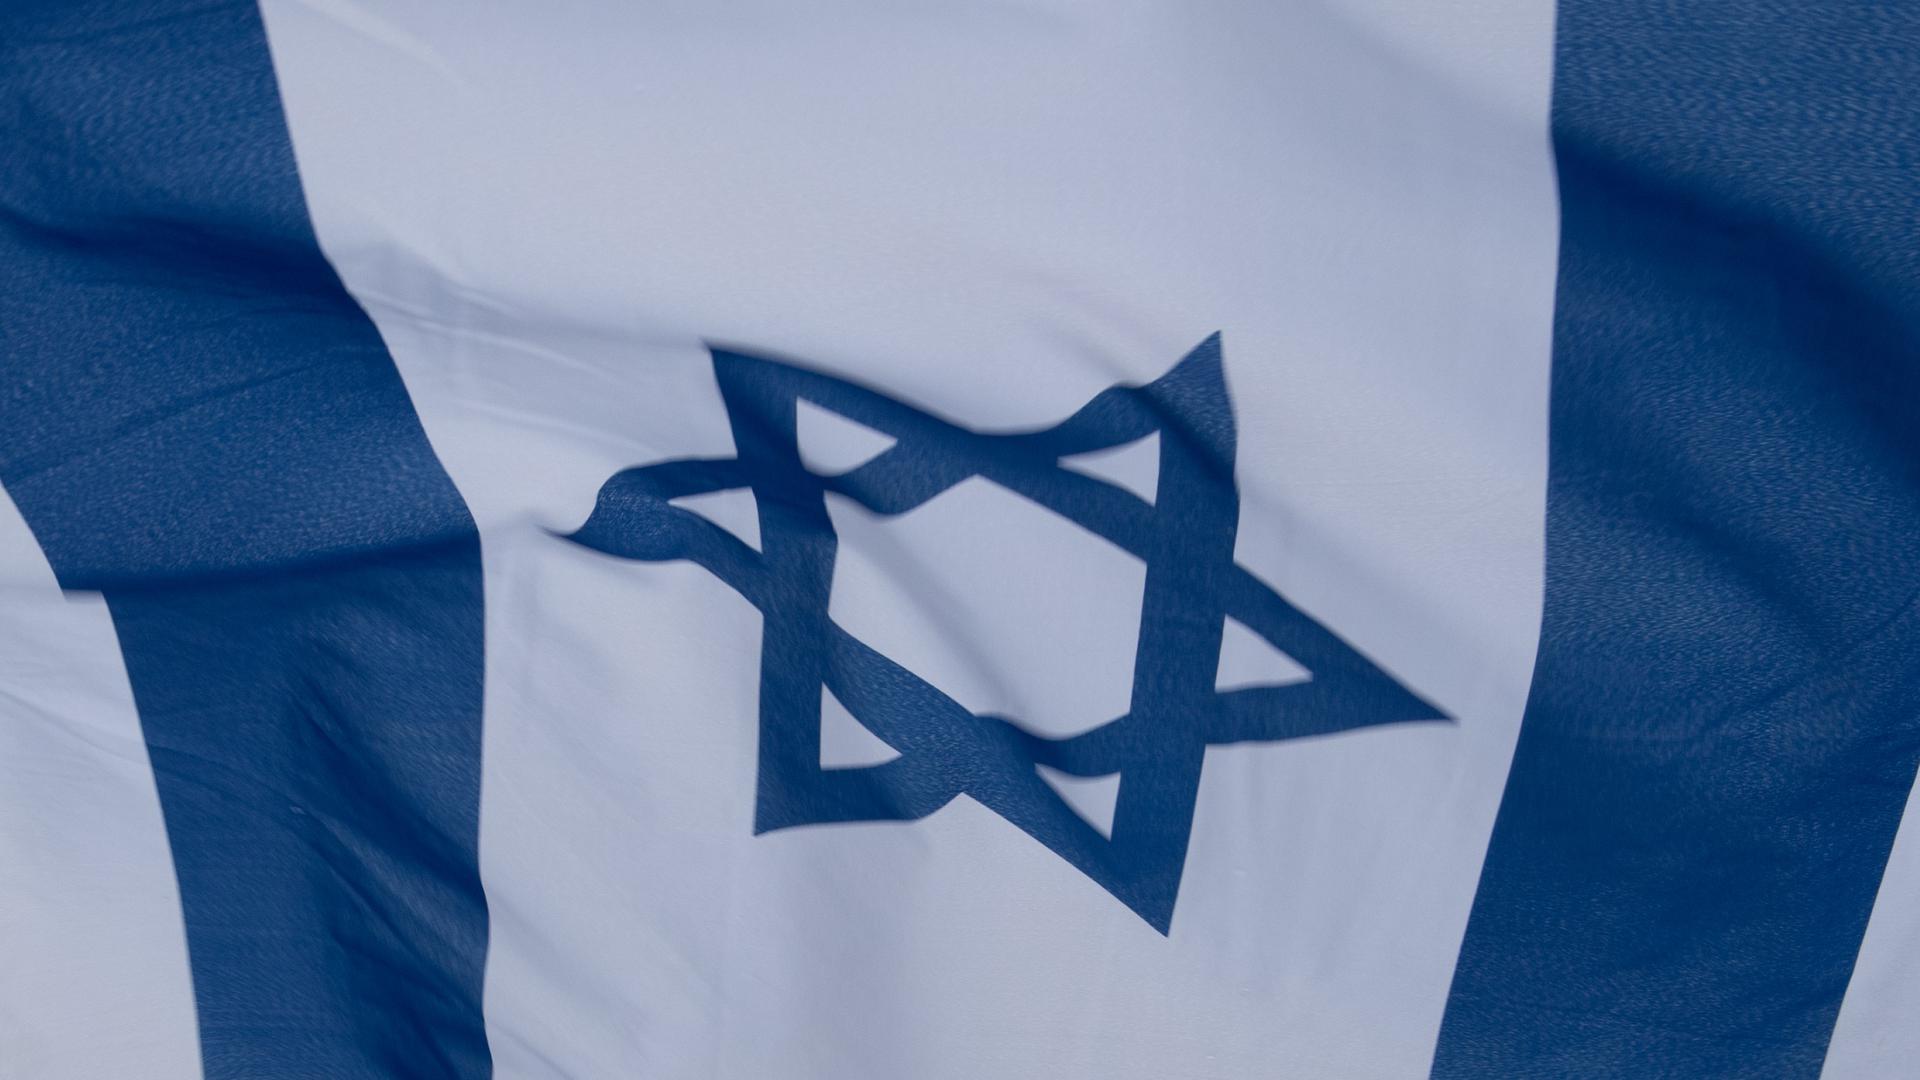  Eine israelische Fahne weht im Wind.